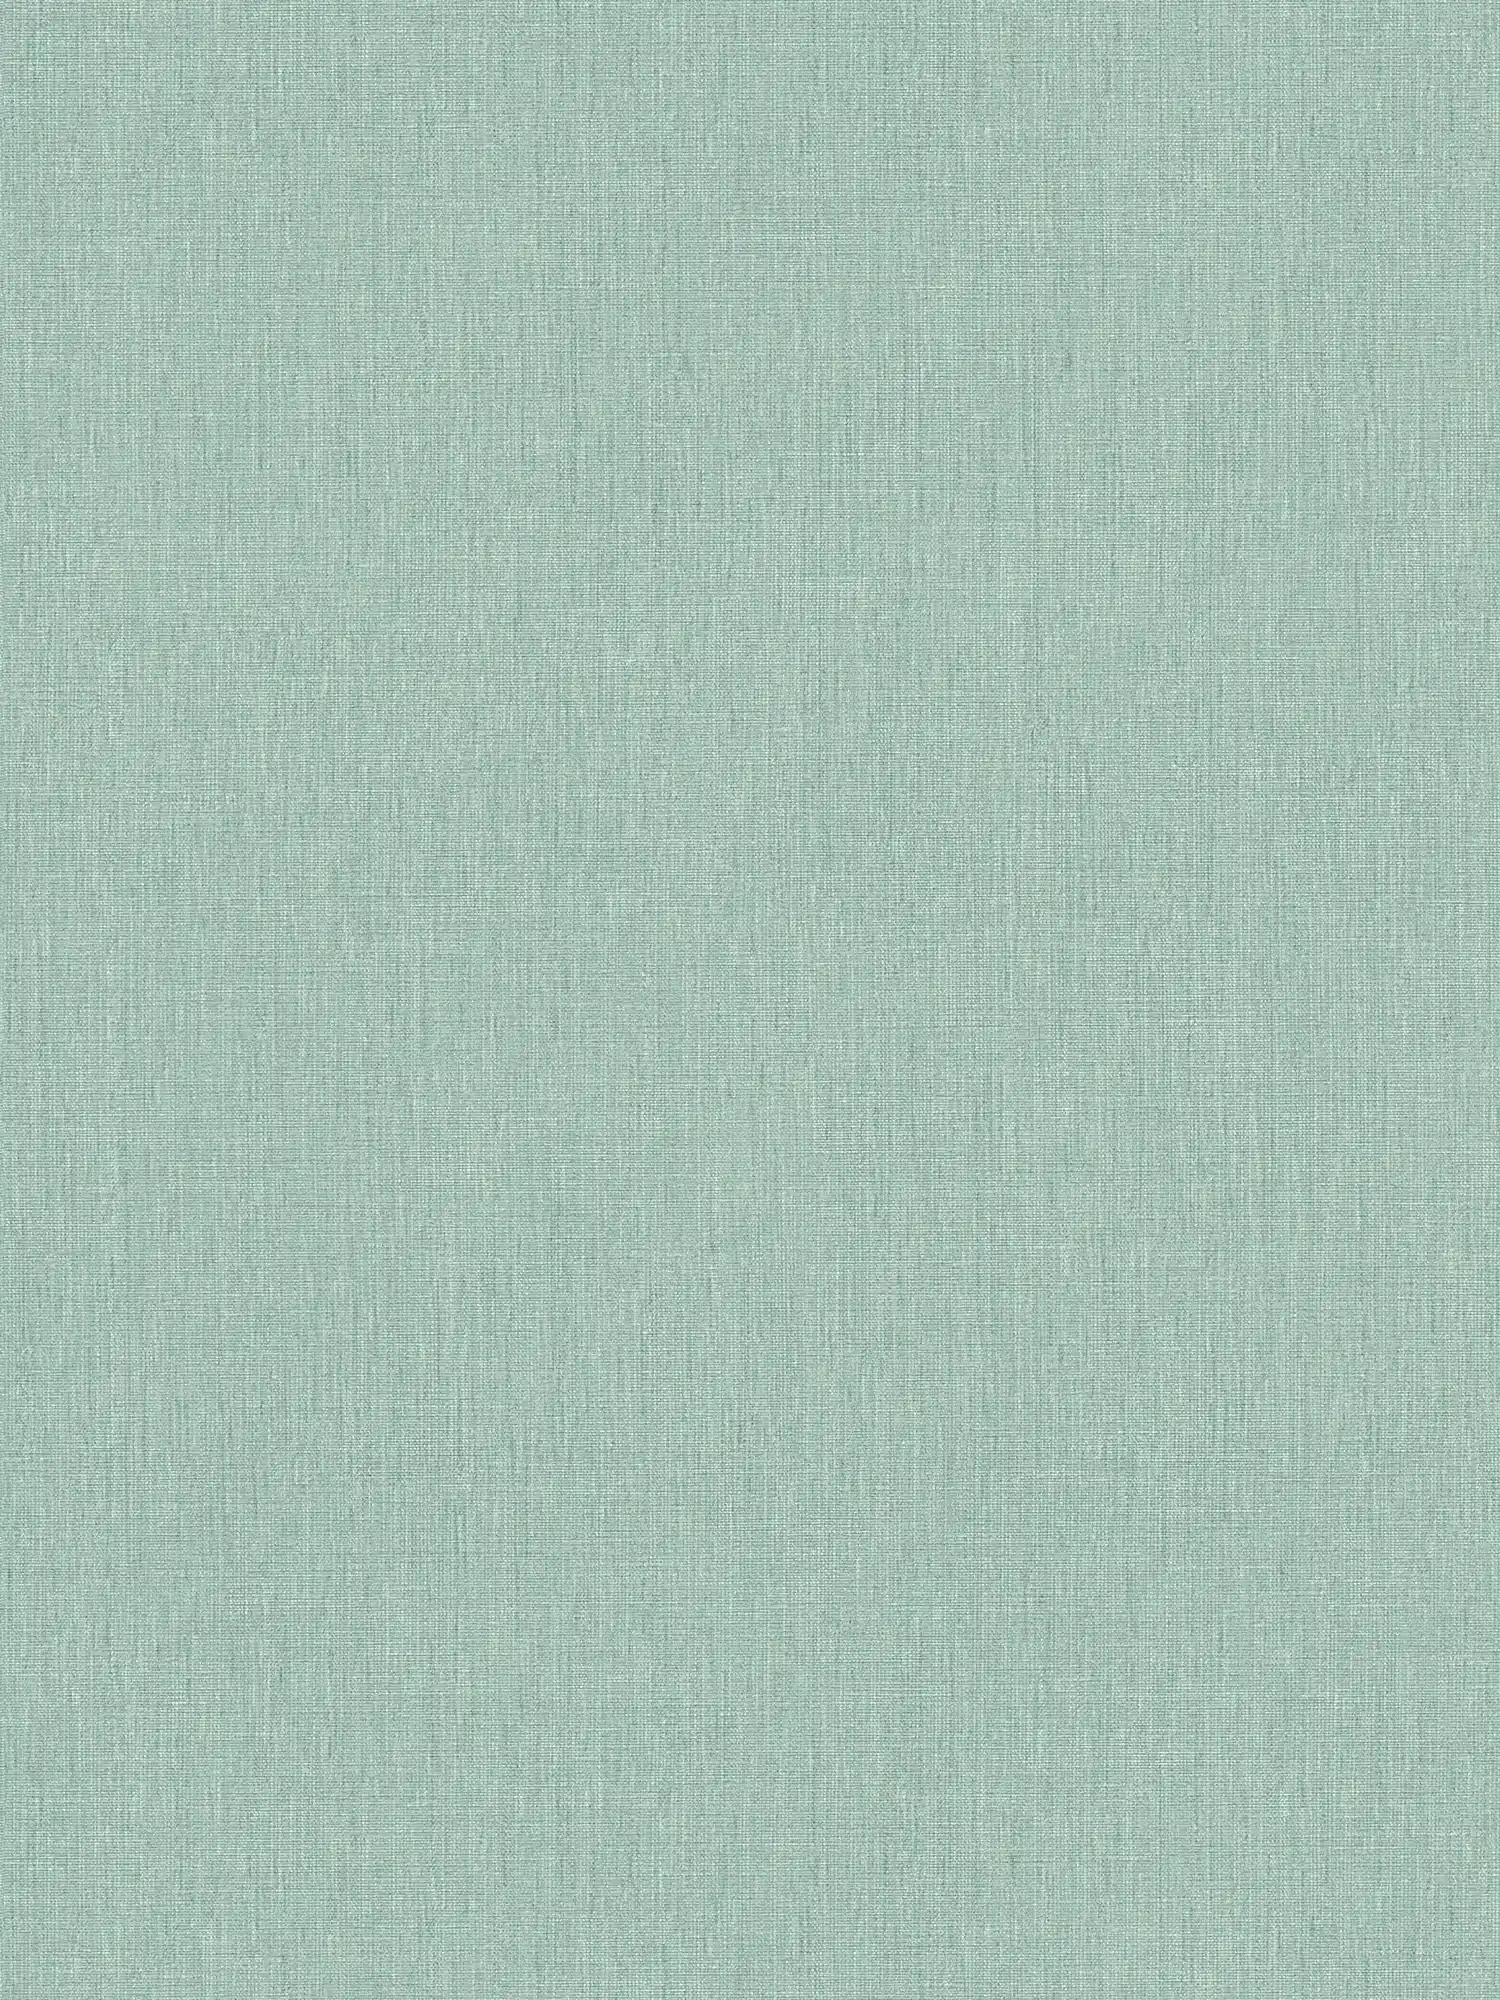 papier peint en papier uni aspect textile - vert, turquoise, bleu
